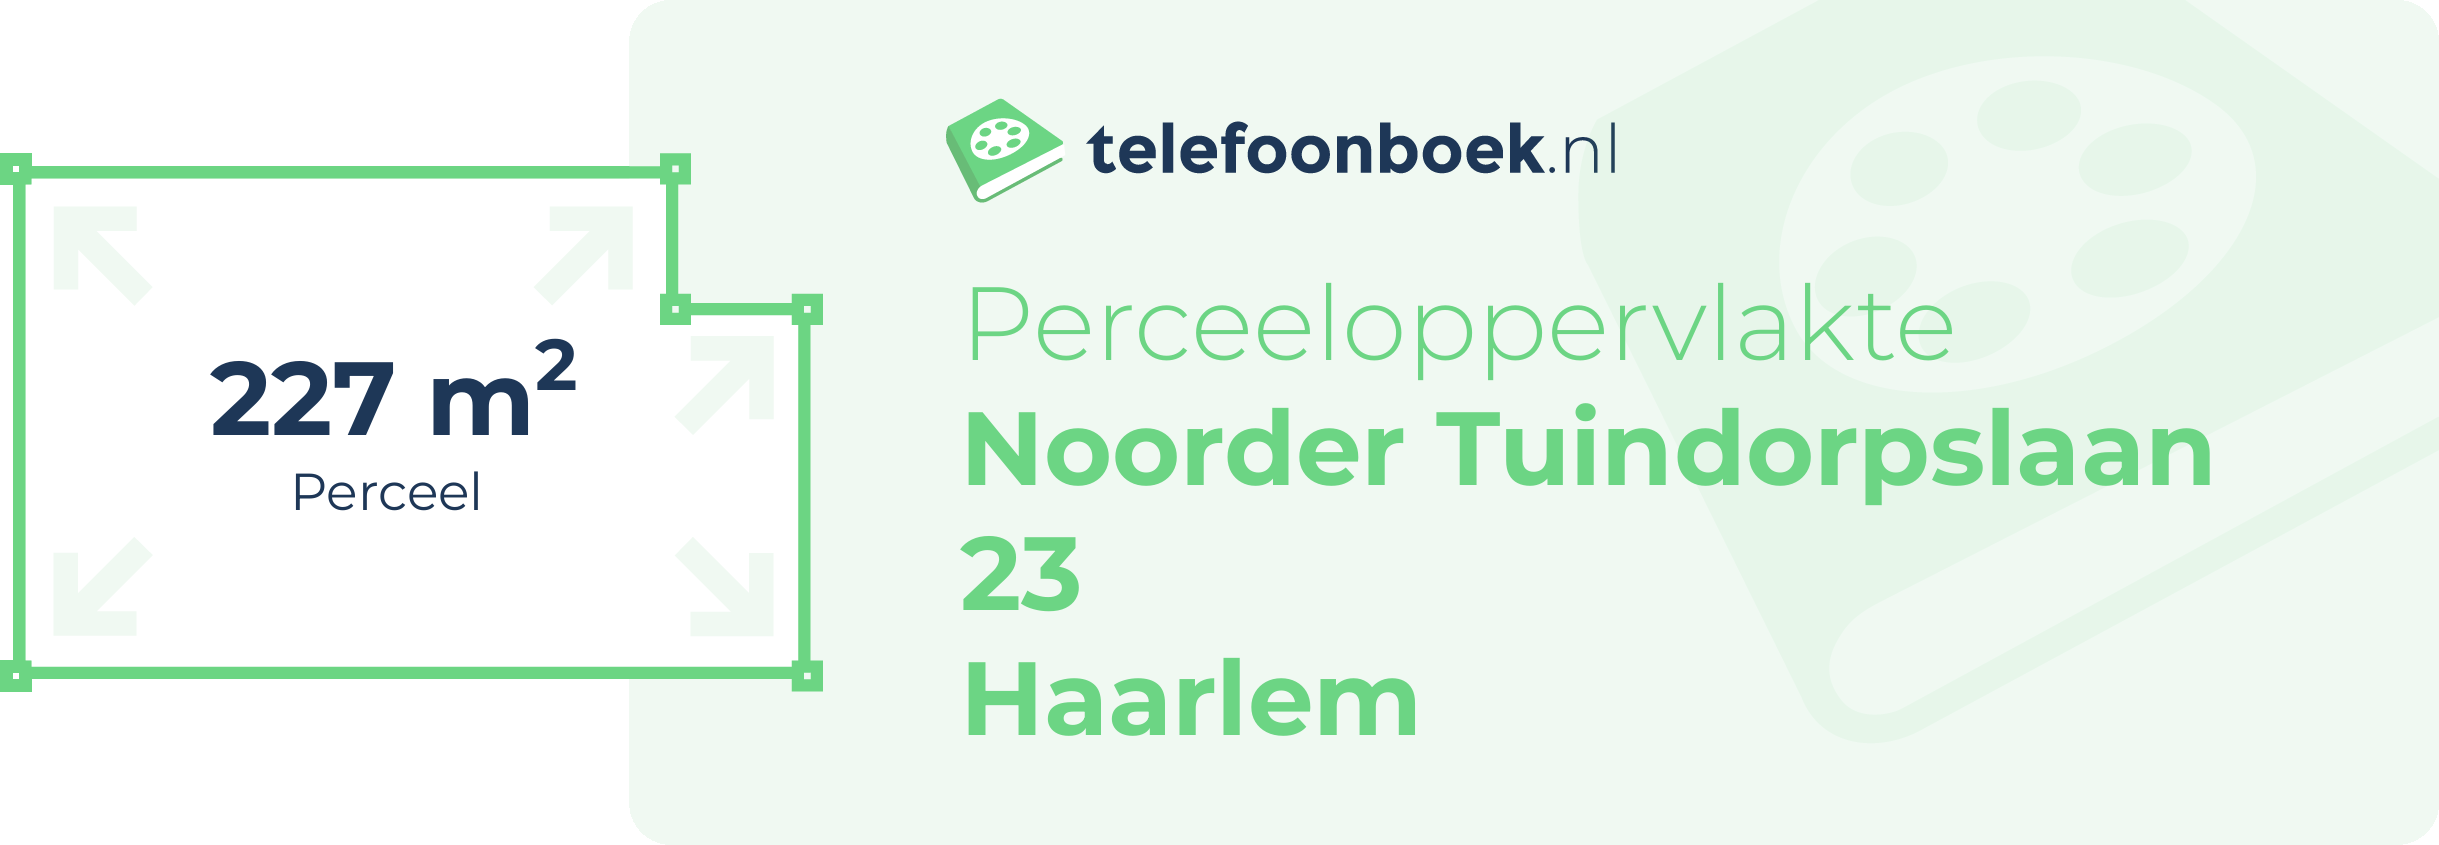 Perceeloppervlakte Noorder Tuindorpslaan 23 Haarlem